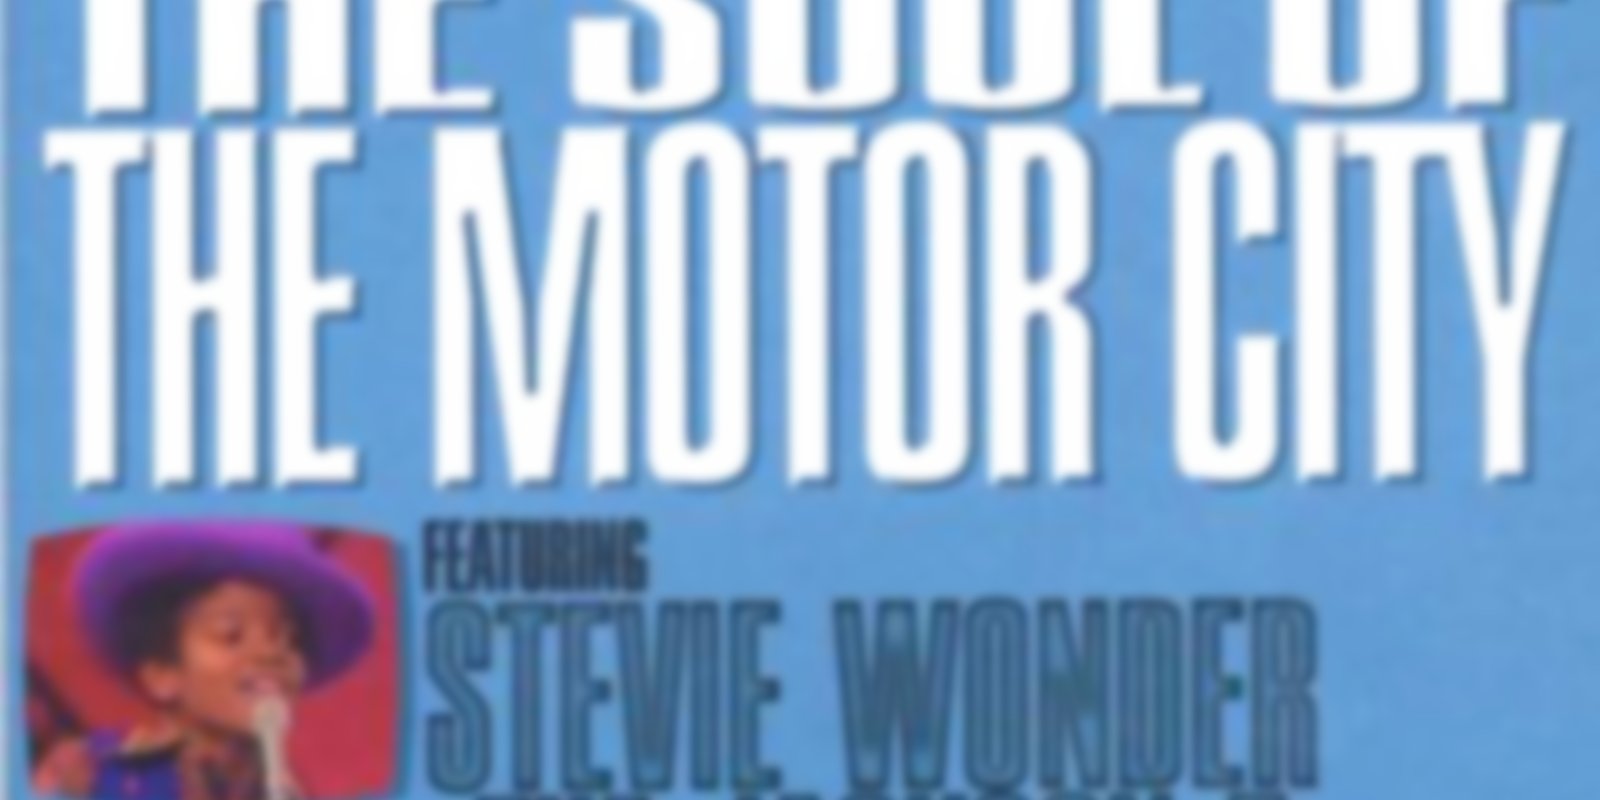 Ed Sullivan's Rock'n'Roll Classics - The Soul of Motor City